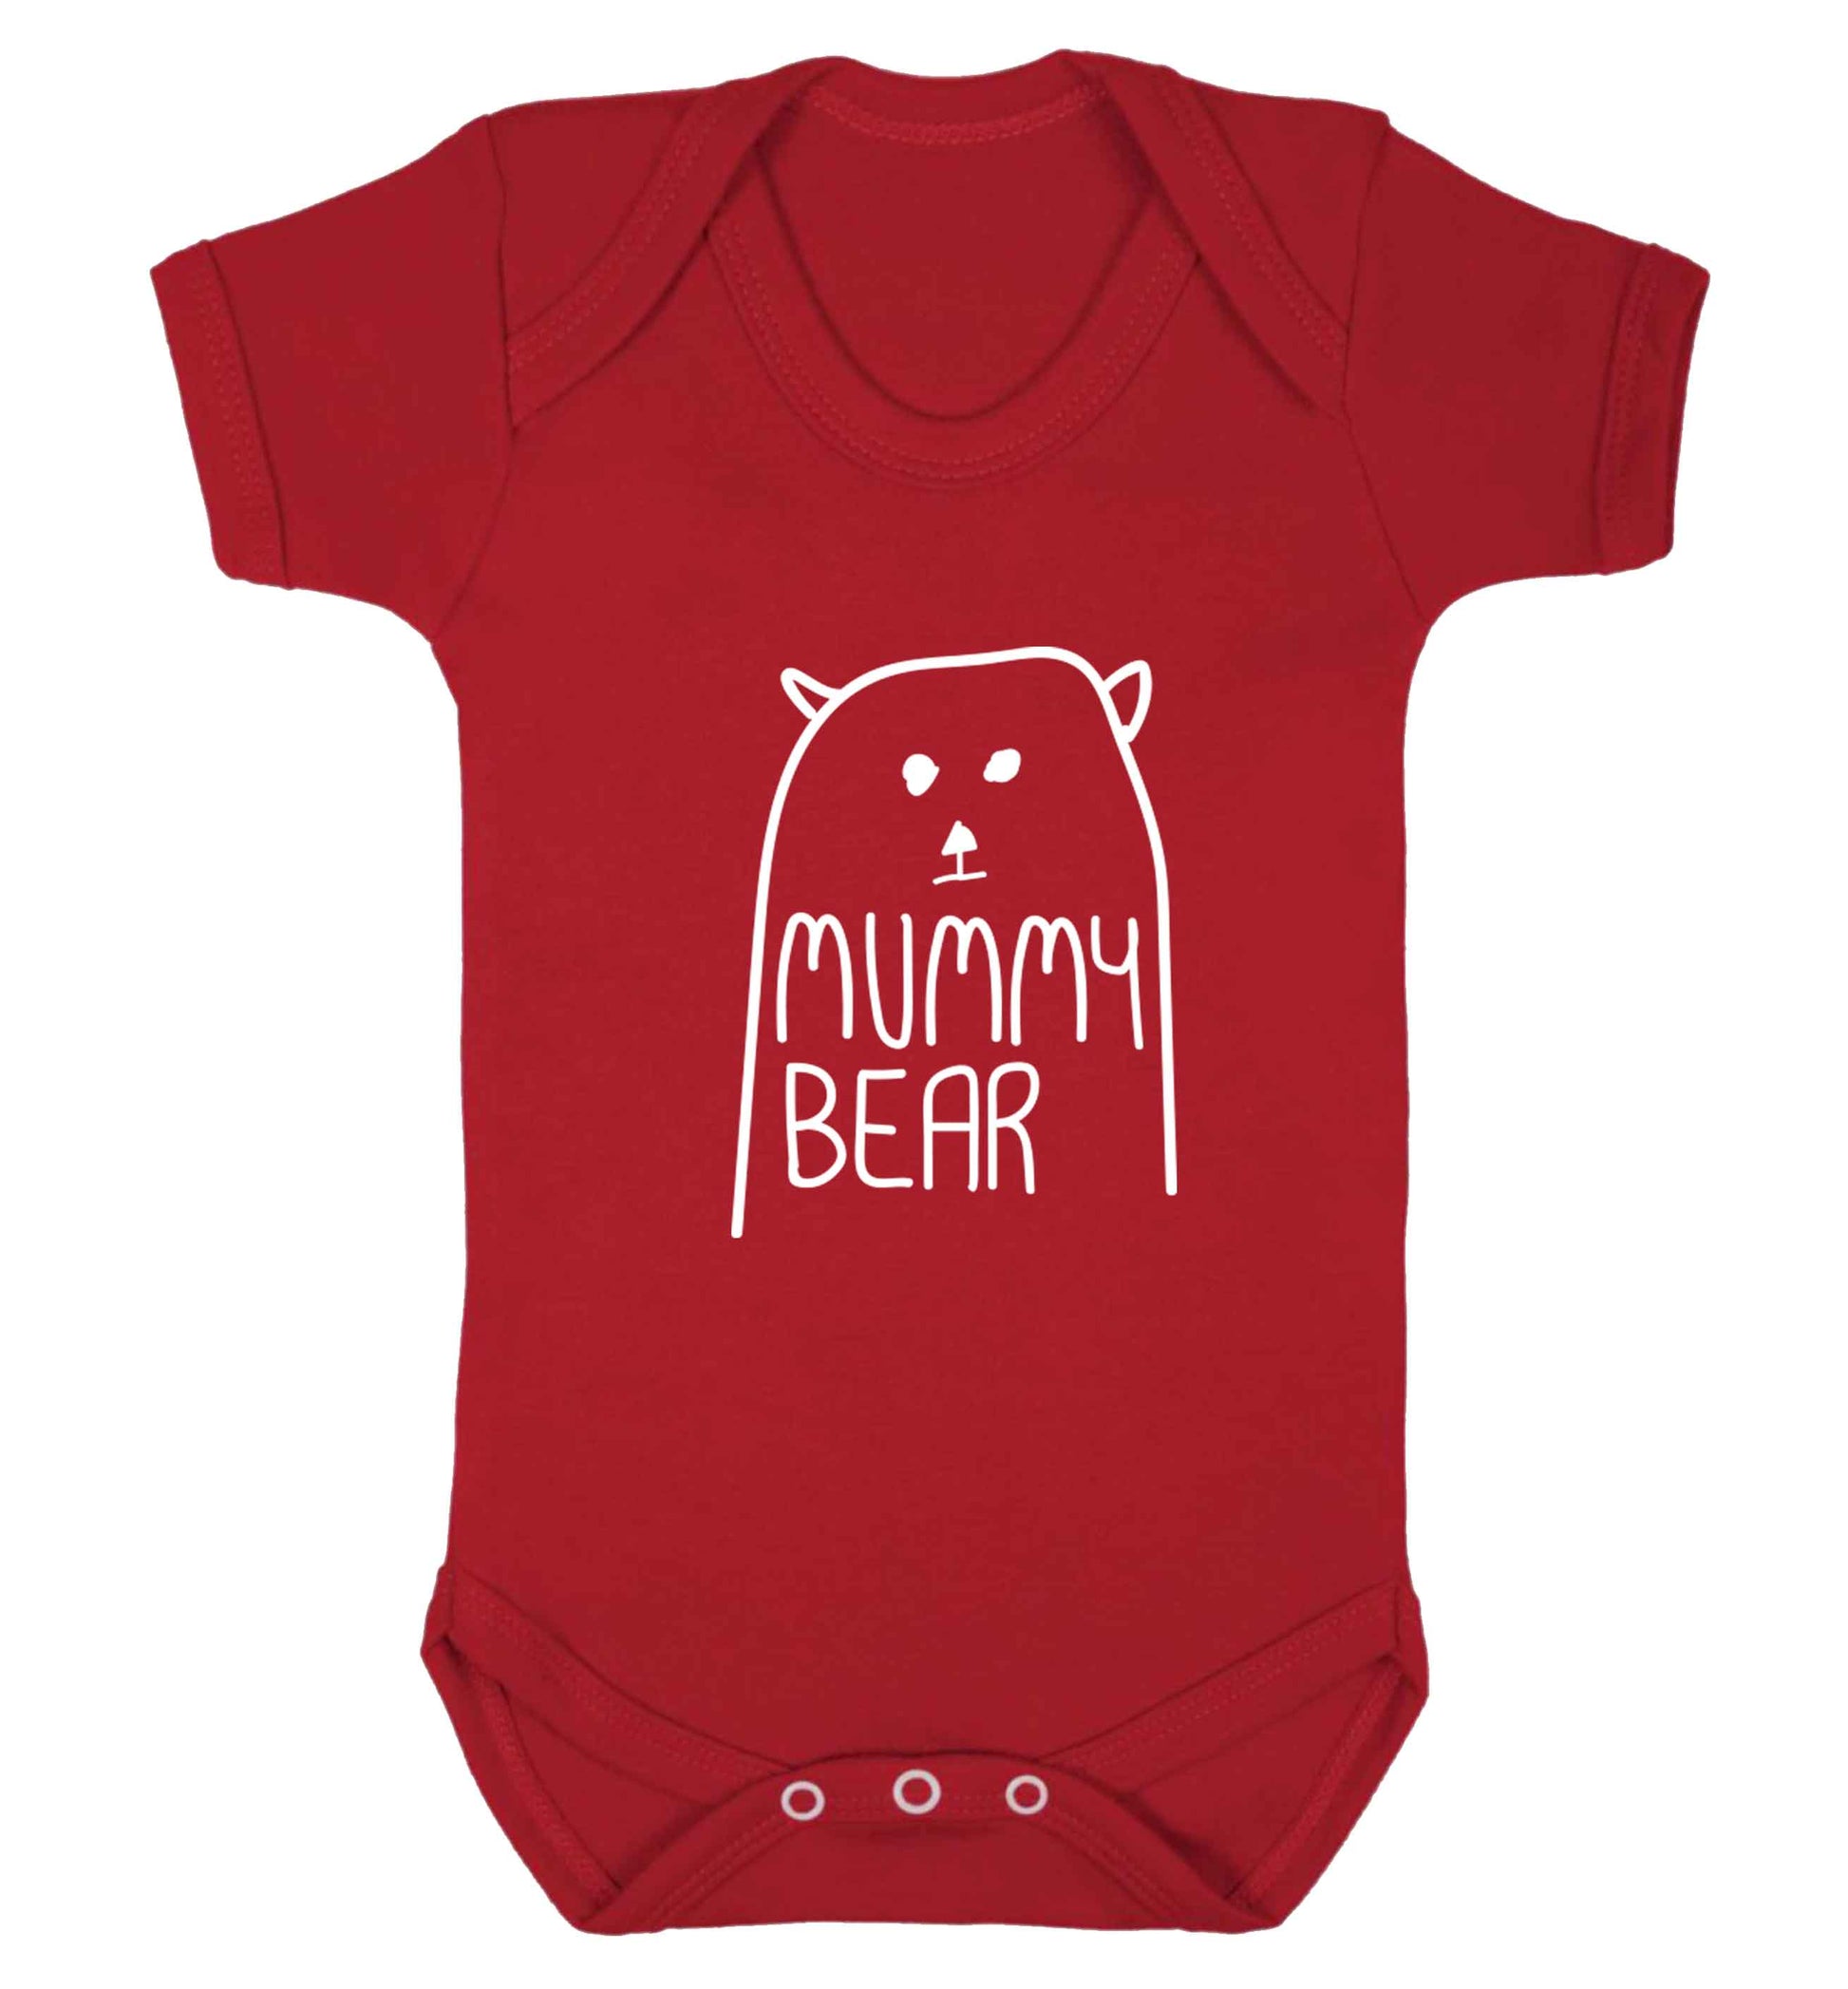 Mummy bear baby vest red 18-24 months